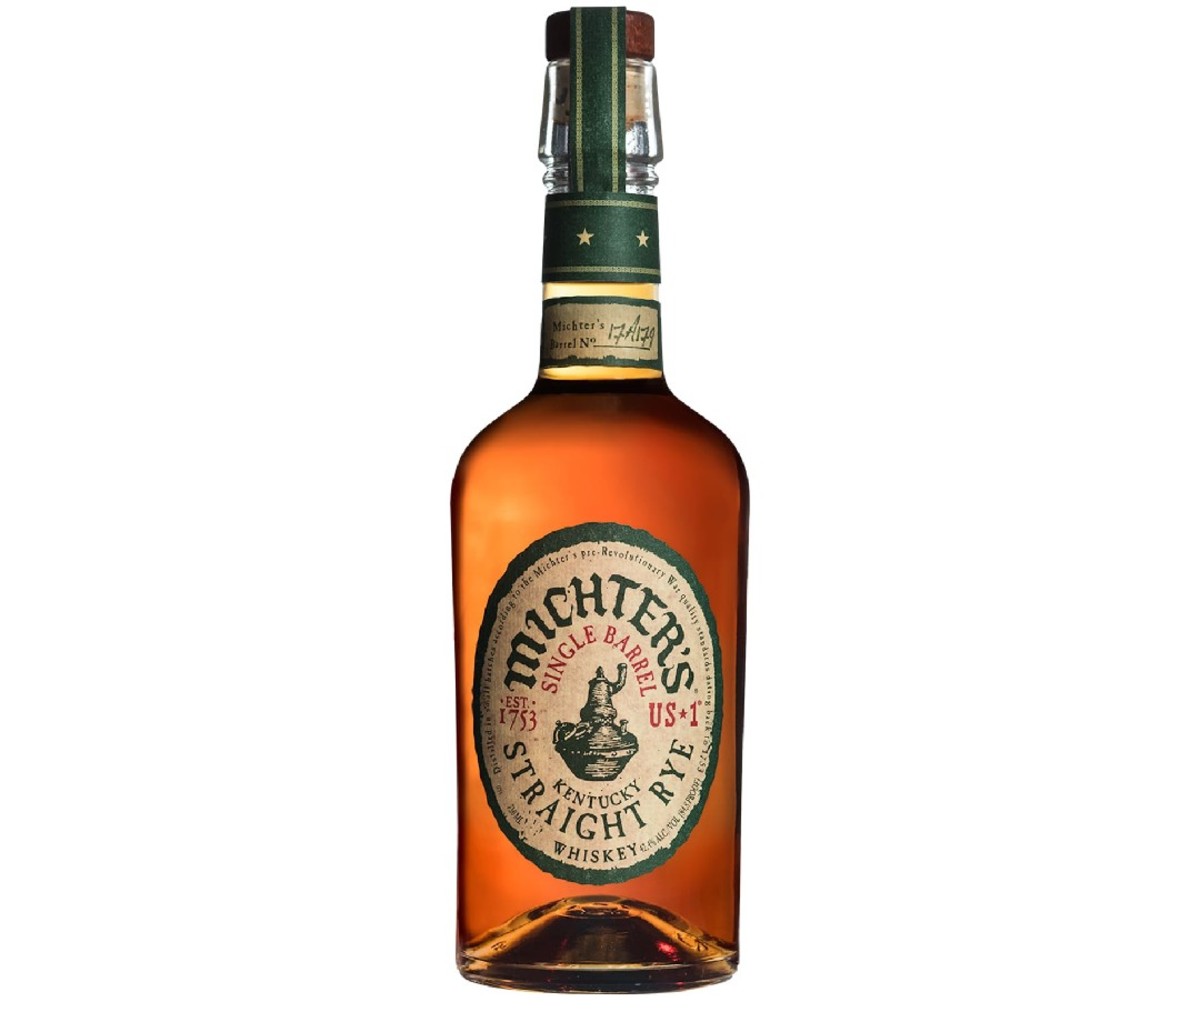 Bottle of Michter’s US-1 Rye Whiskey